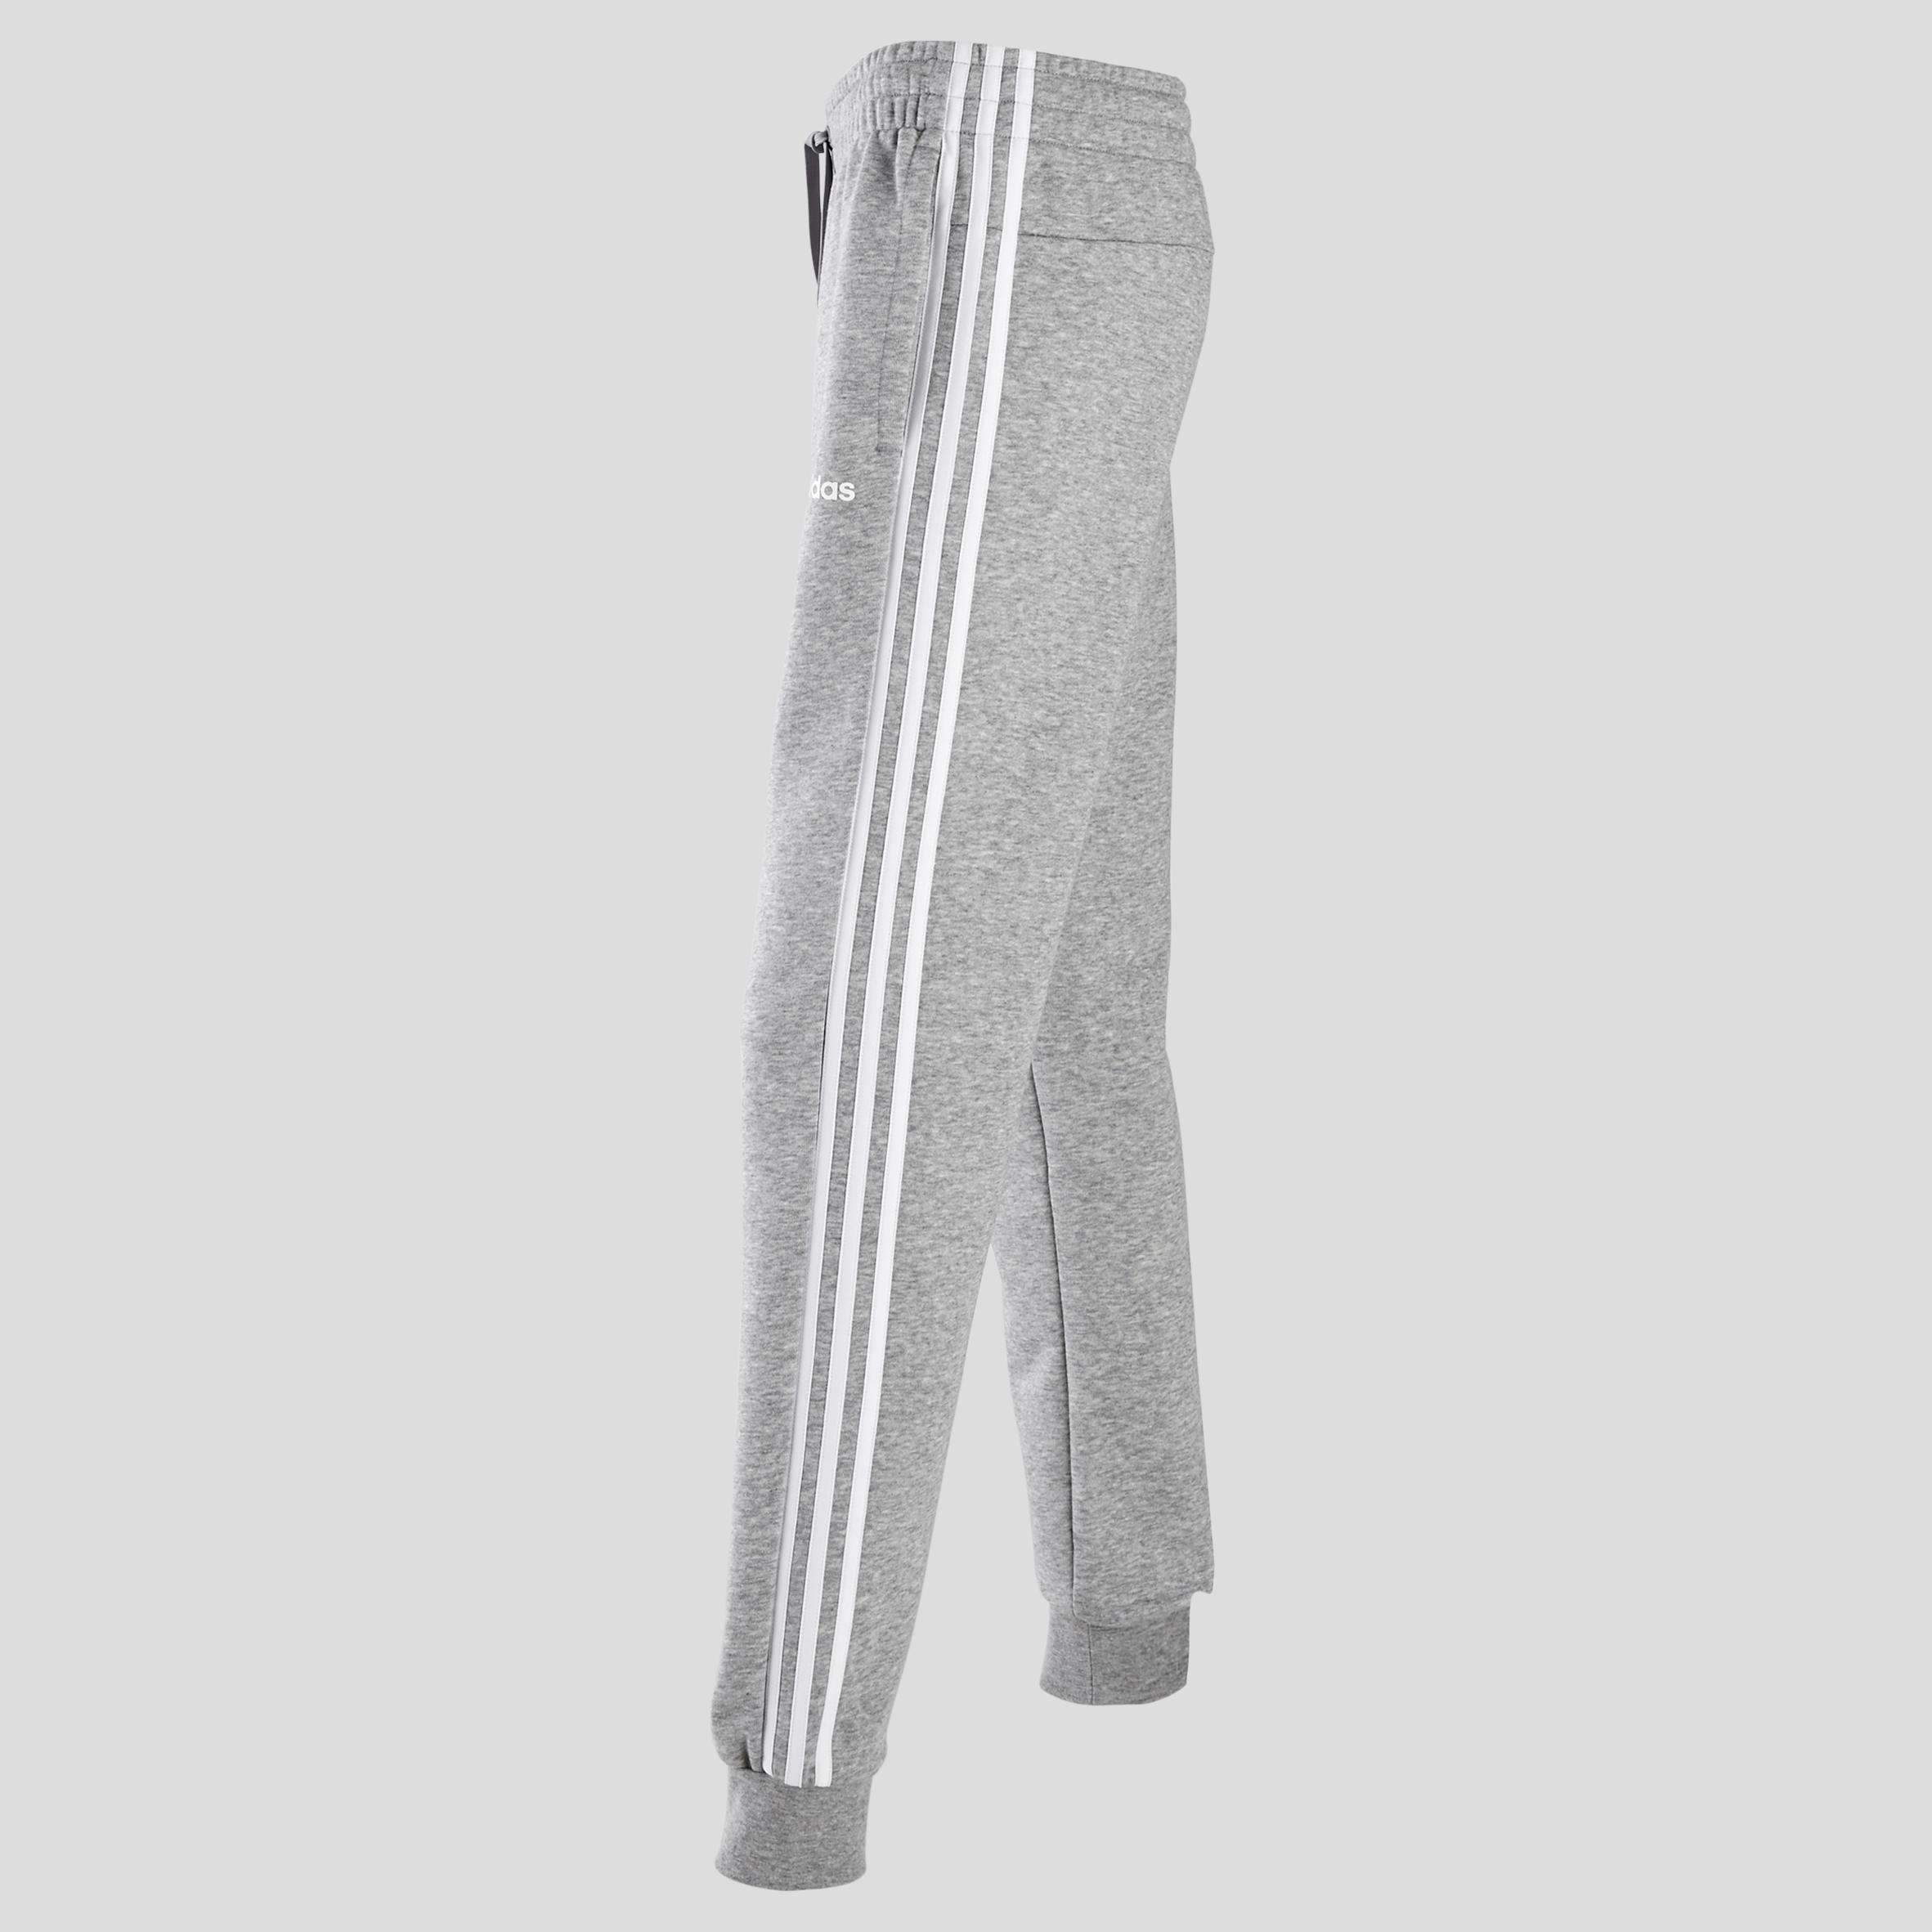 Pantalon de survêtement Adidas femme trois bandes gris